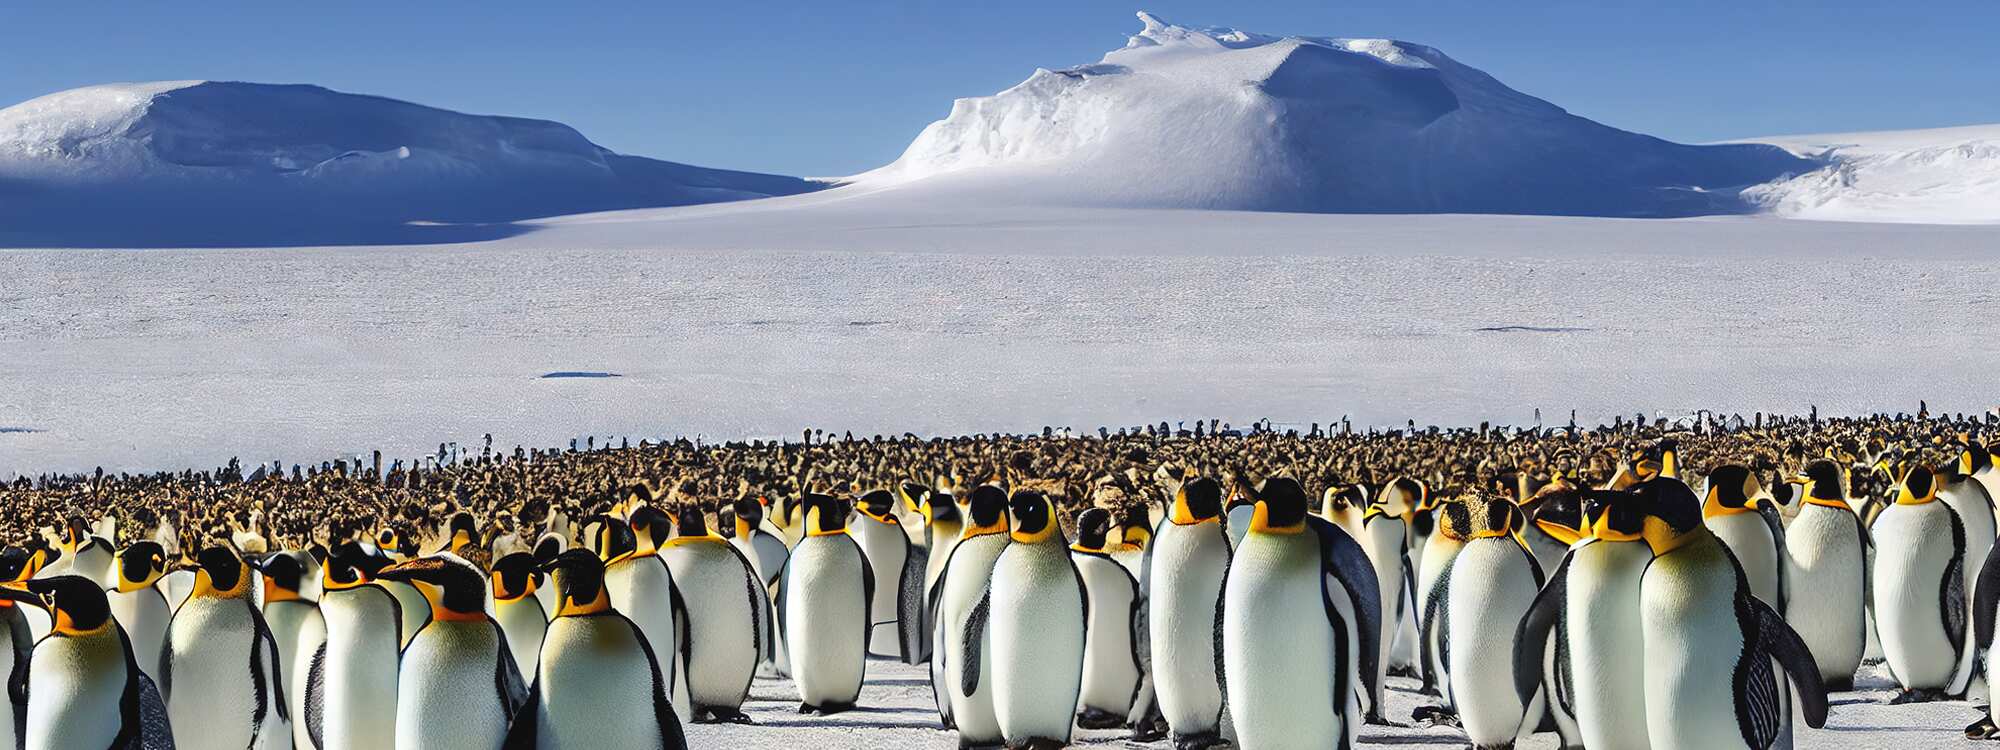 Eine große Herde von Kaiserpinguinen versammelte sich an einem kalten, sonnigen Tag auf einer Eisscholle nahe der Südlichen Orkneyinseln in der Region Antarktis